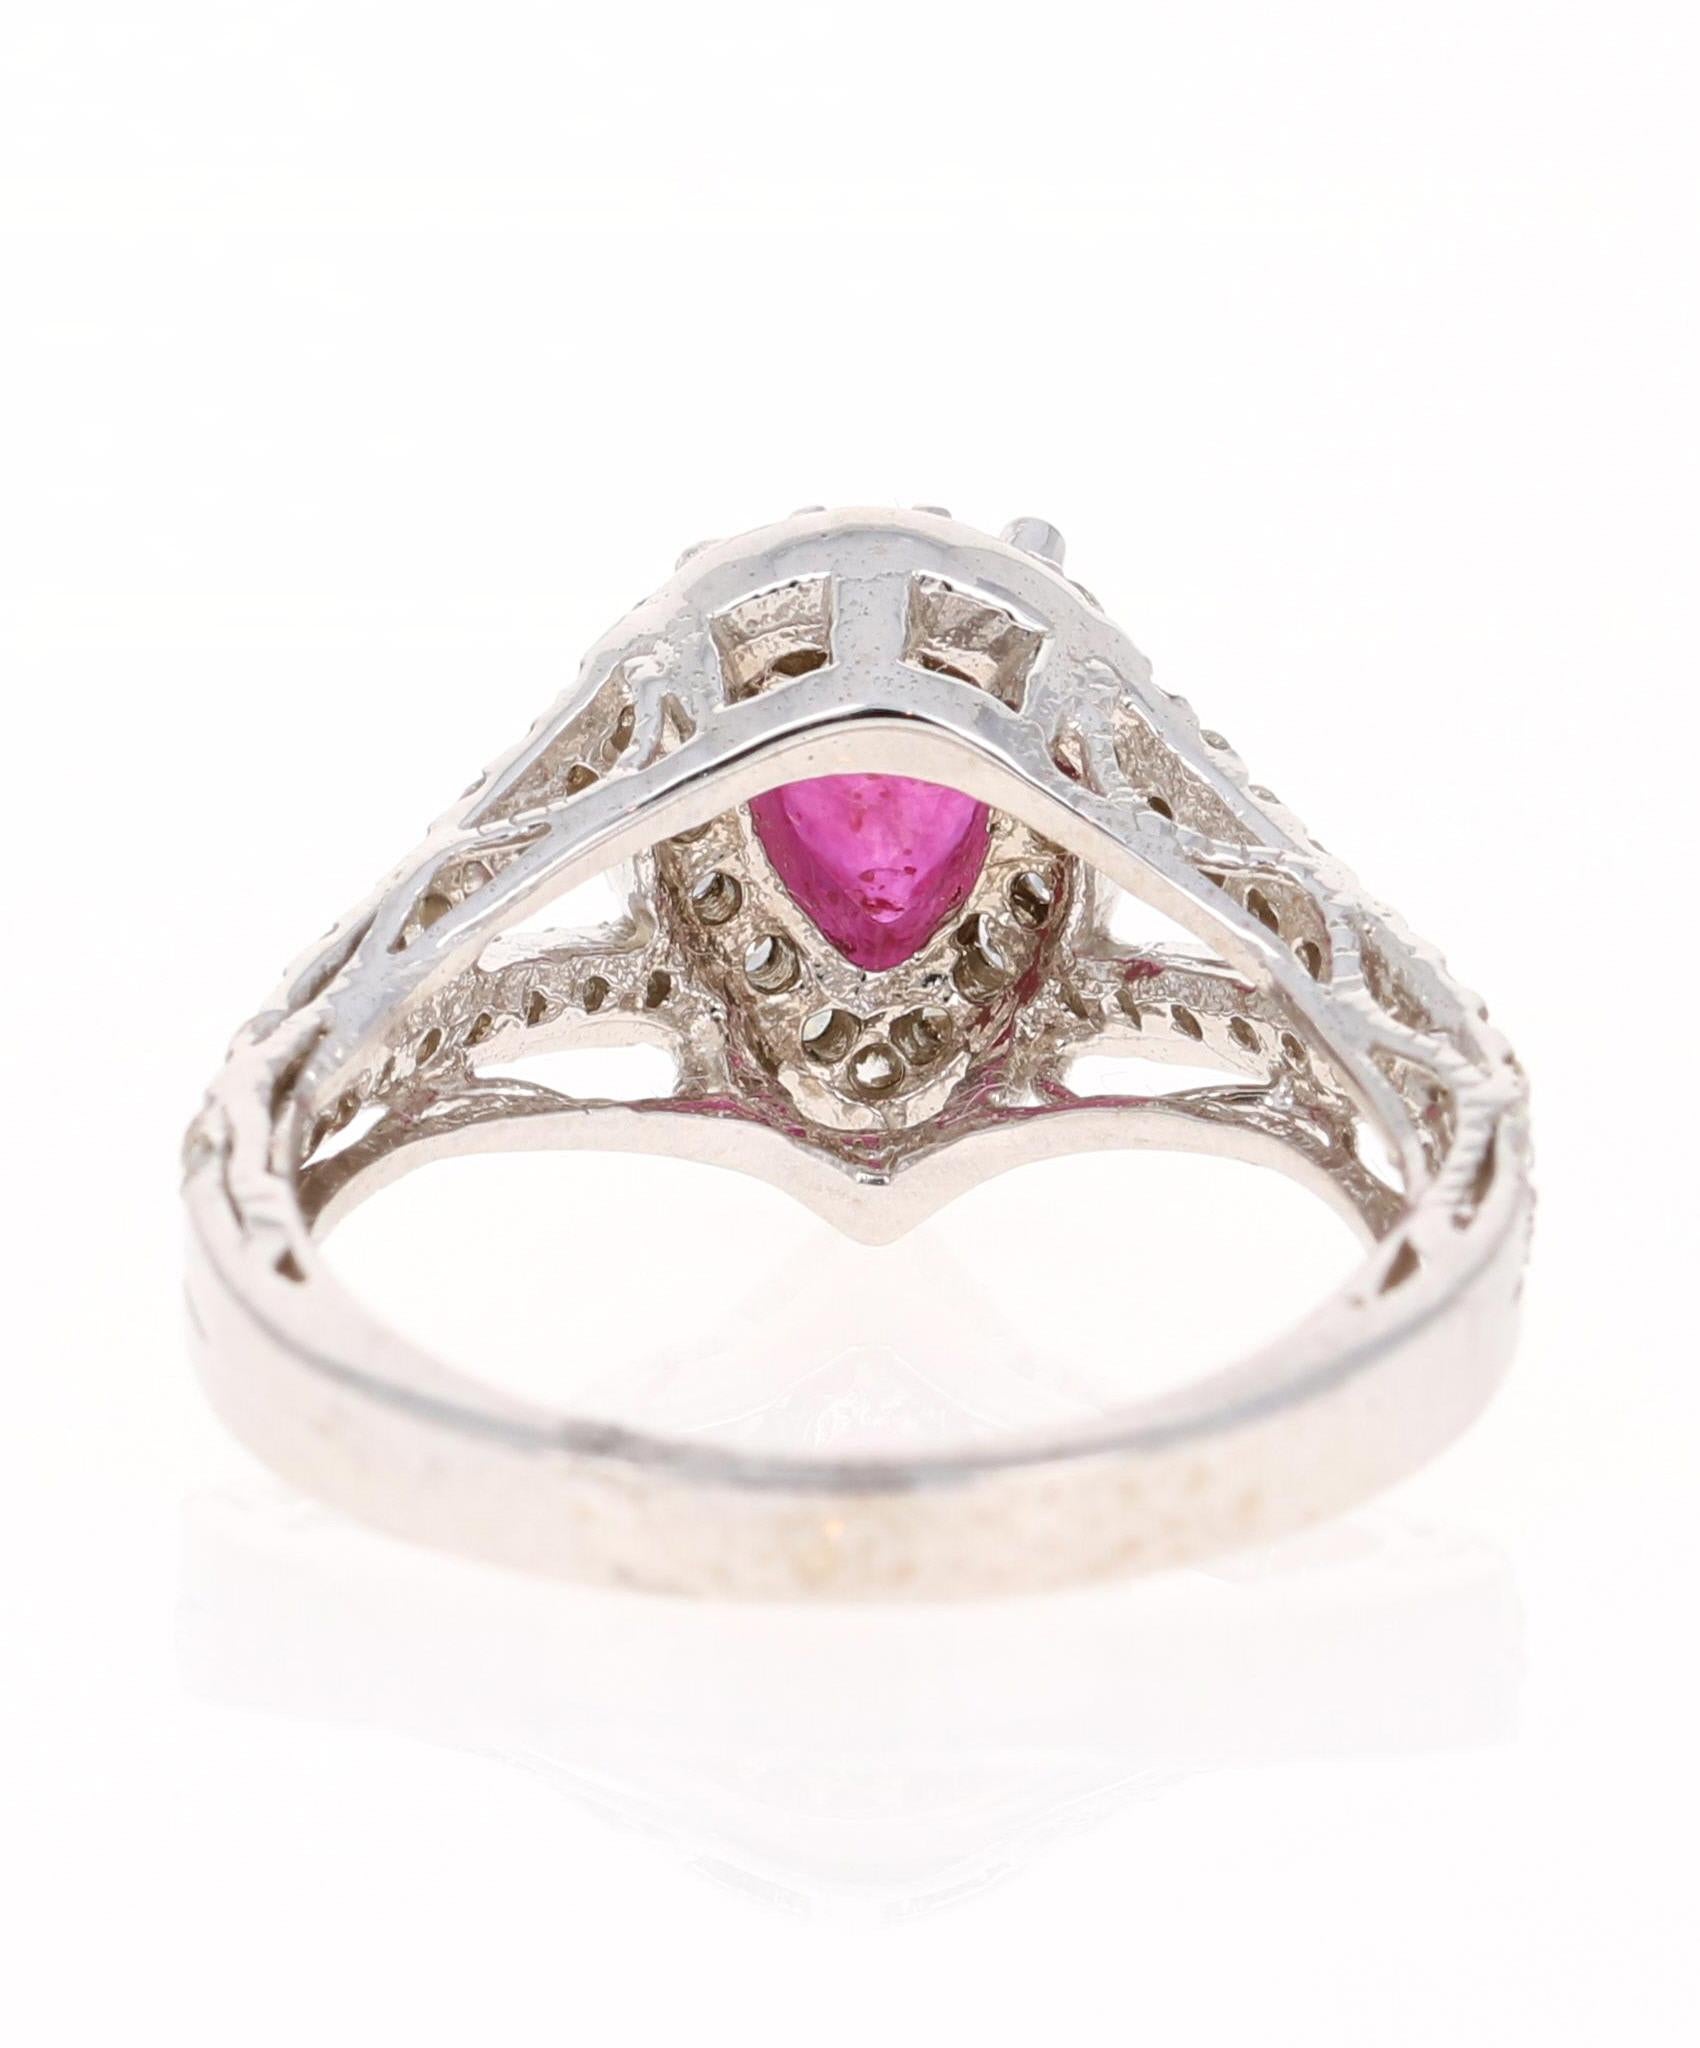 Pear Cut 1.64 Carat Ruby Diamond 14 Karat White Gold Engagement Ring